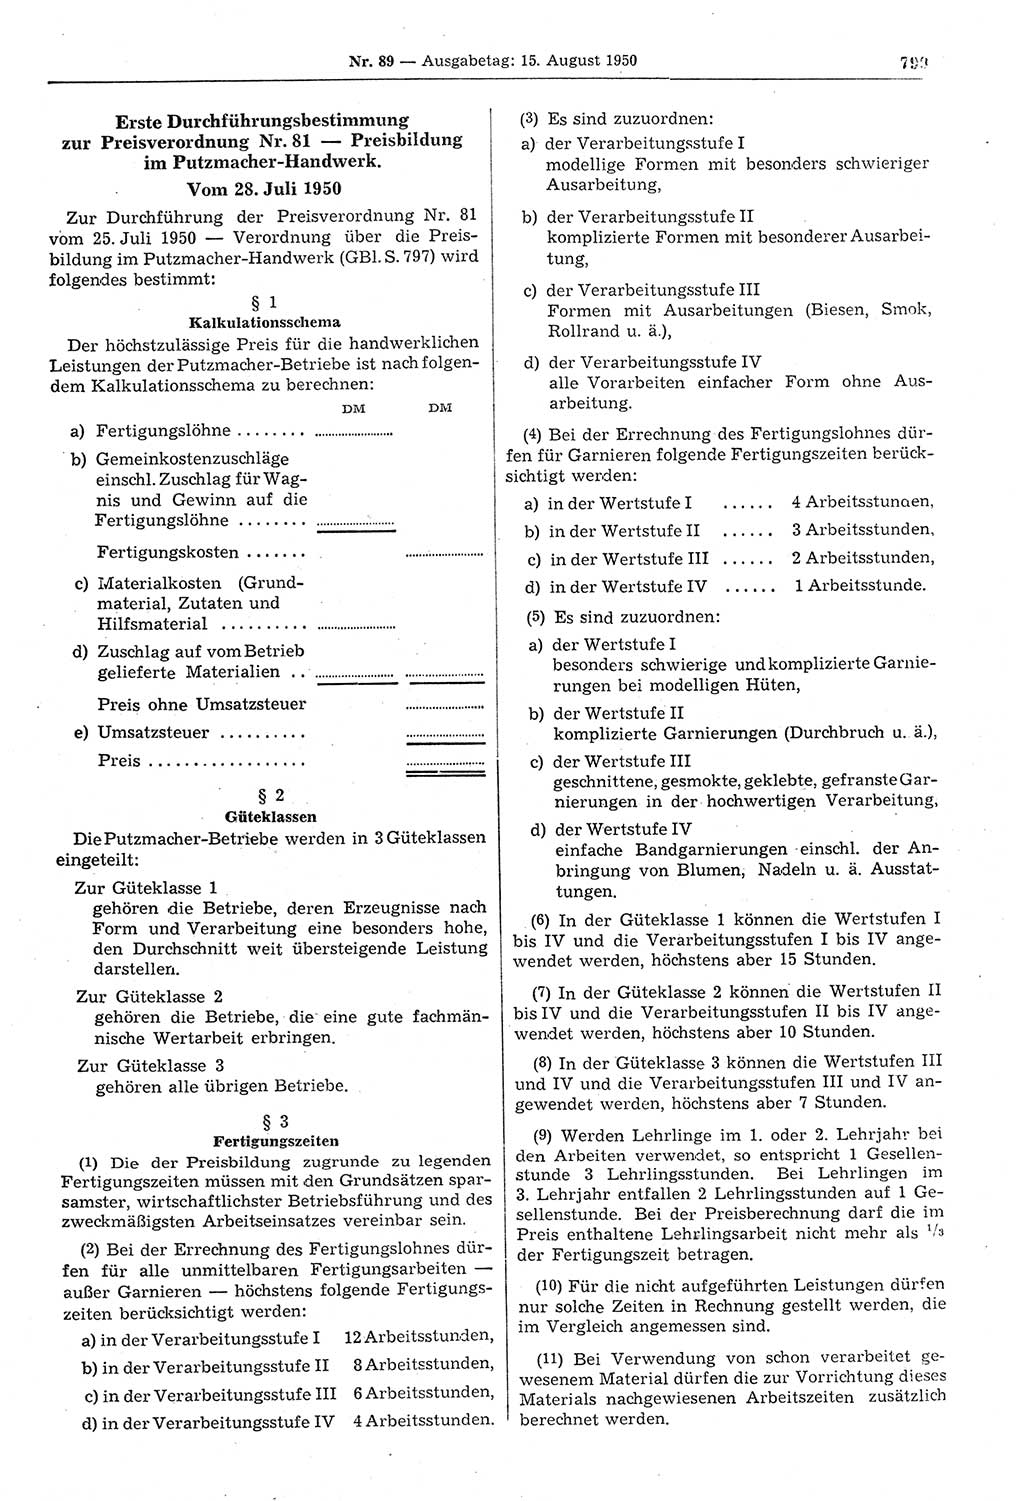 Gesetzblatt (GBl.) der Deutschen Demokratischen Republik (DDR) 1950, Seite 799 (GBl. DDR 1950, S. 799)